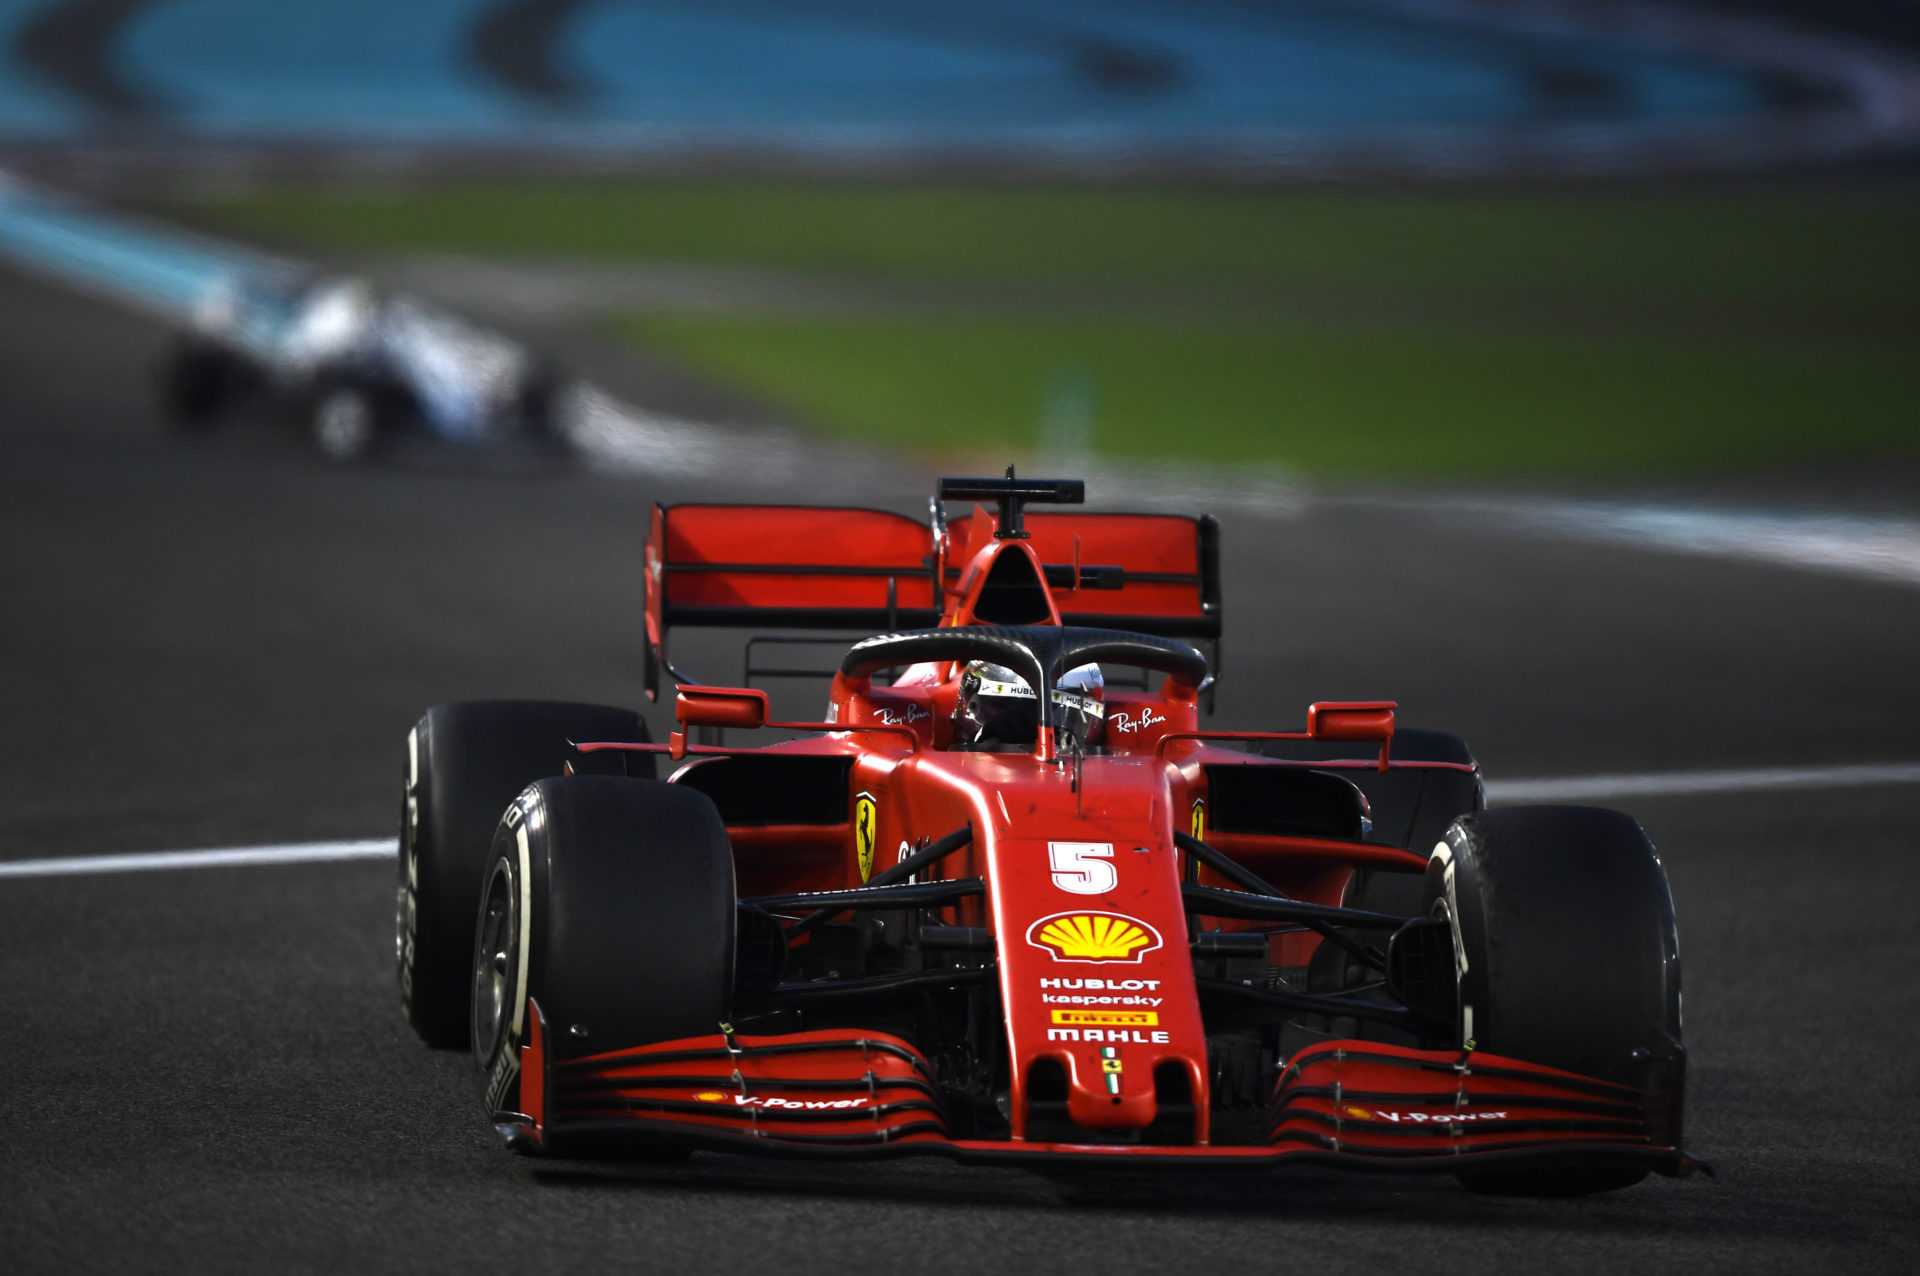 «C'est le rêve» - Antonio Giovinazzi exprime son désir de conduire pour Ferrari dans le futur